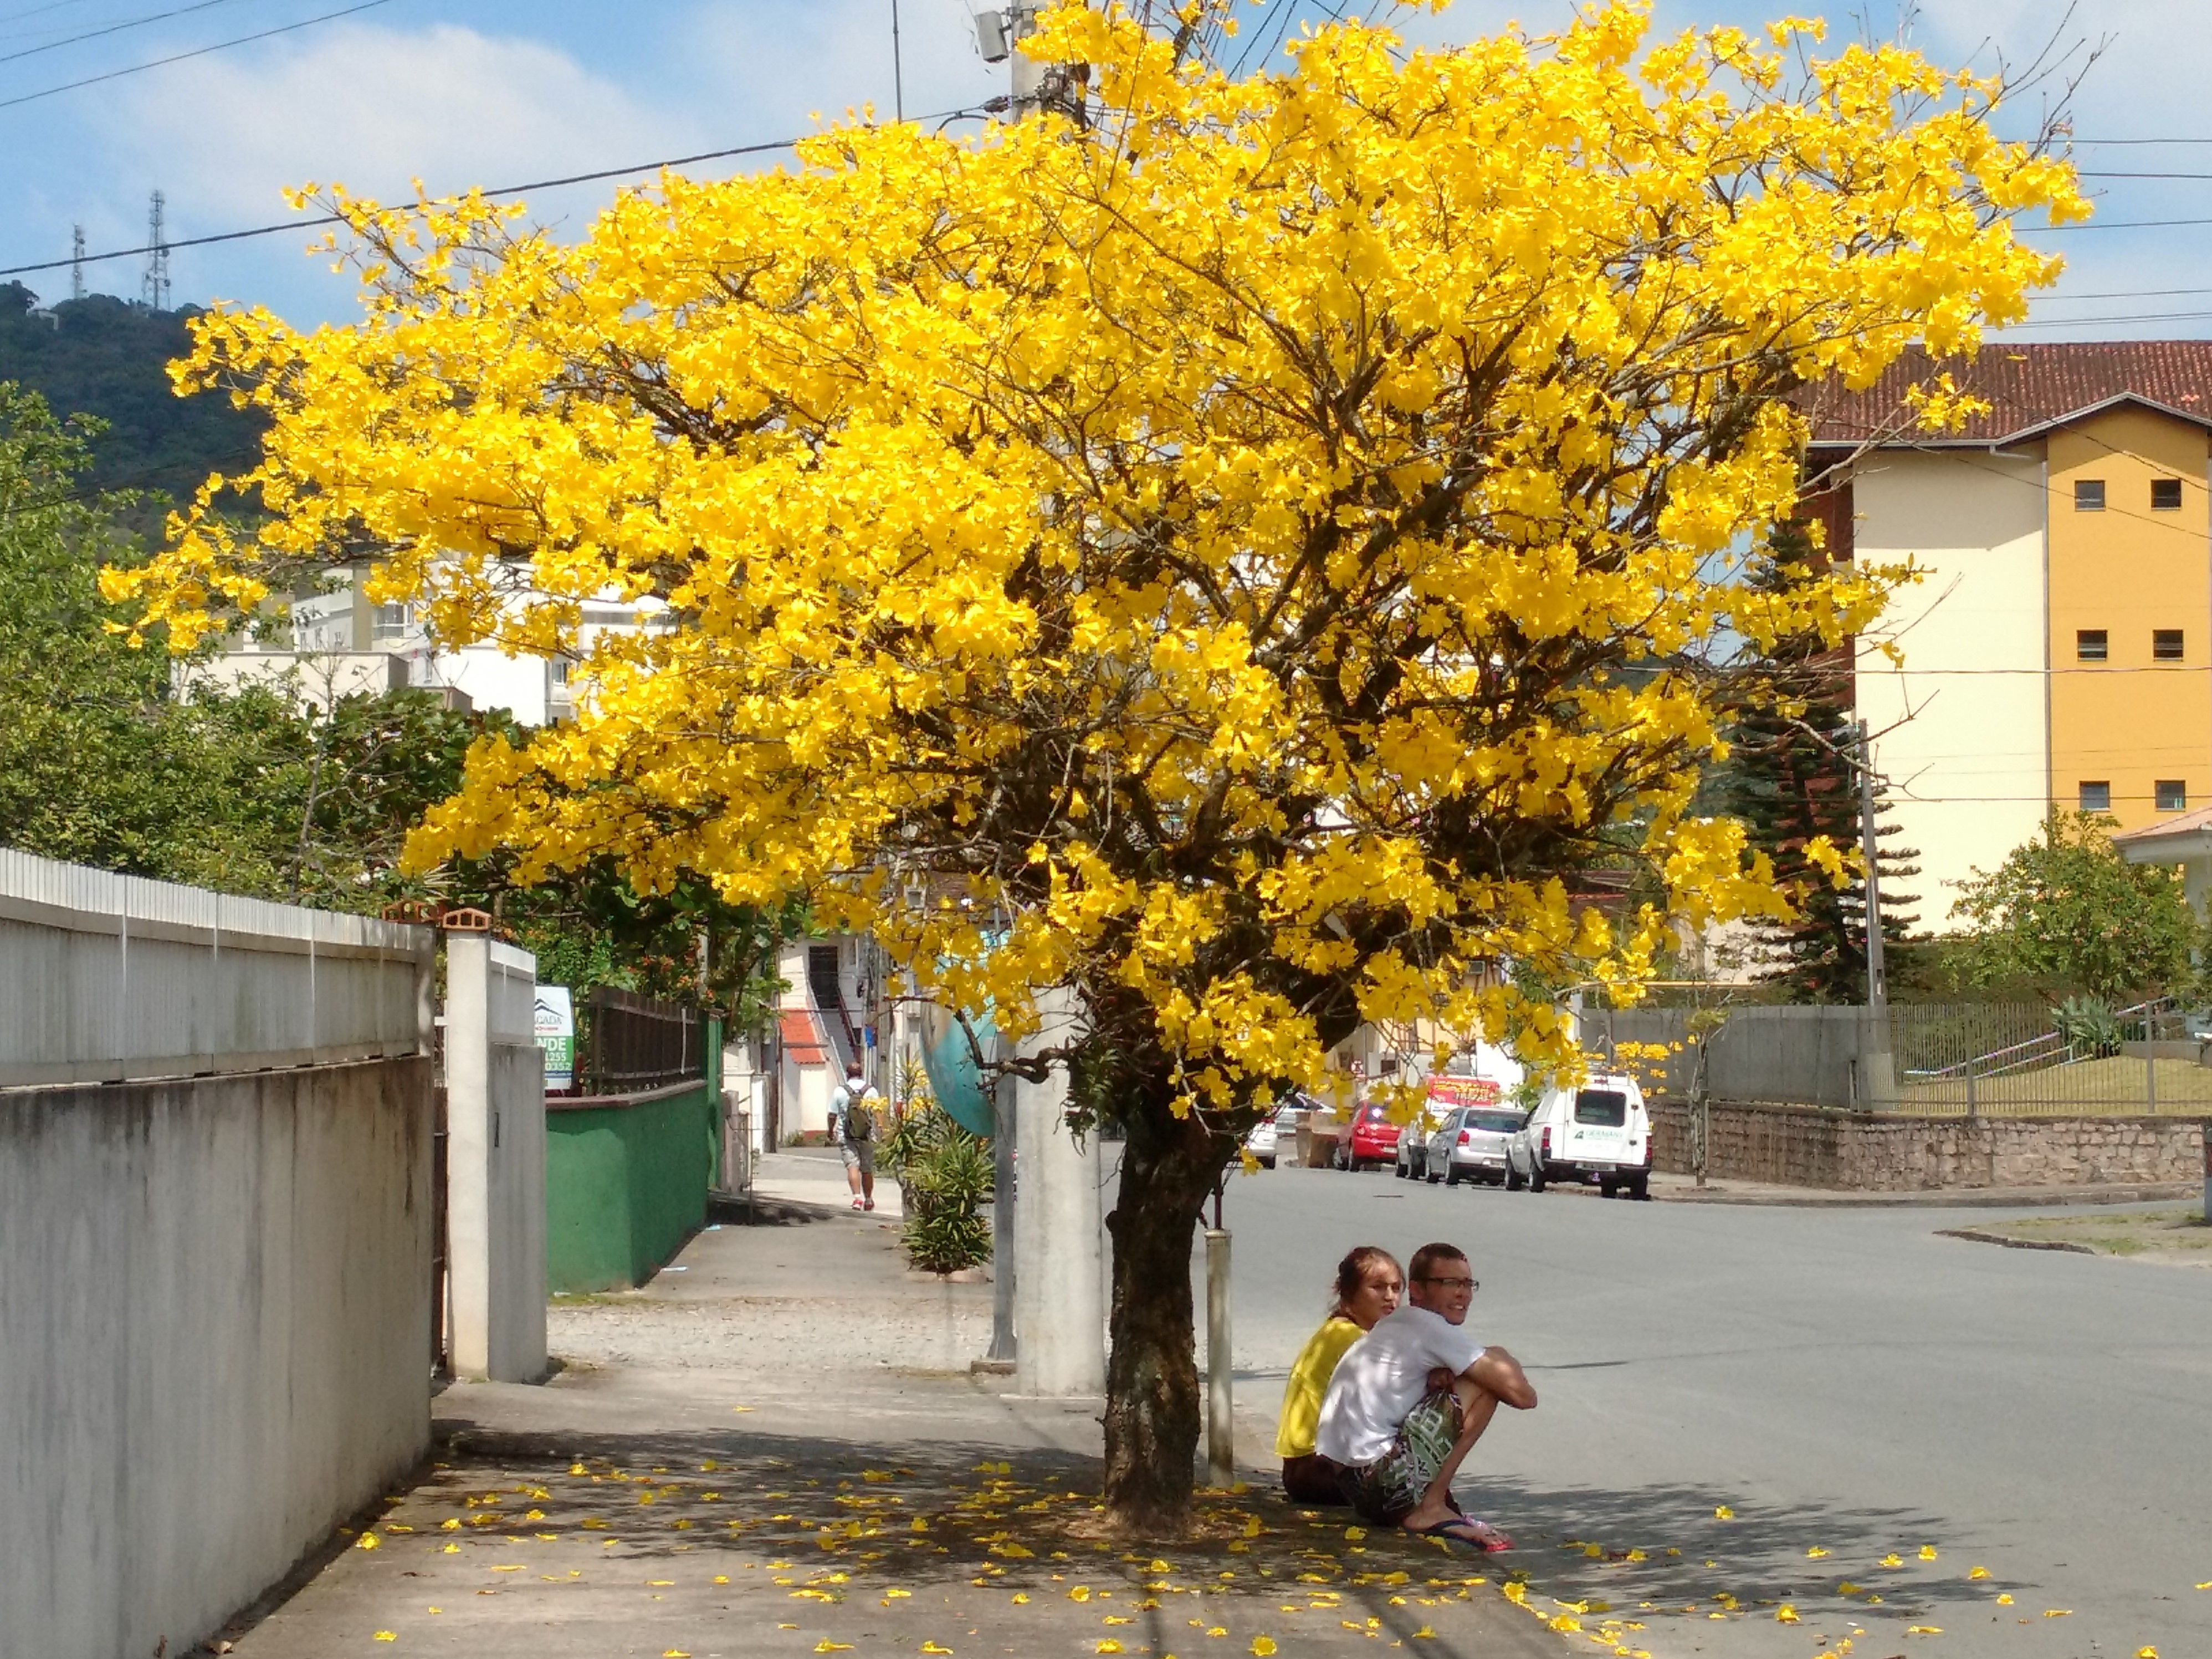 FOTOS: Conheça as 14 árvores nativas encontradas em Joinville | ND Mais